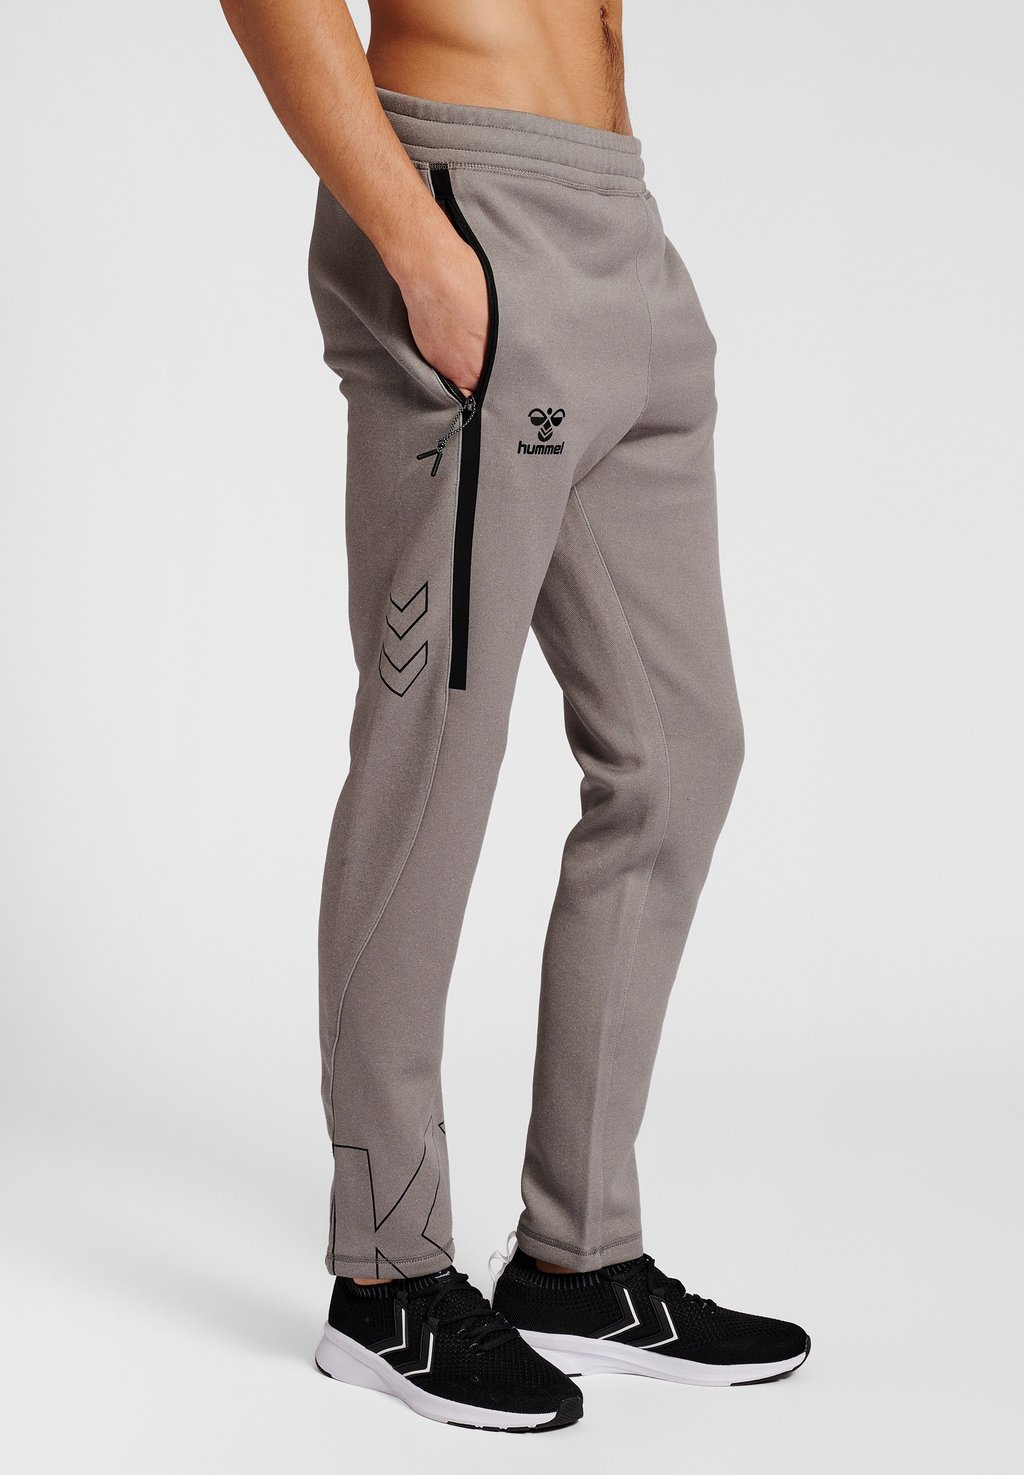 Спортивные брюки Hummel, серый меланж спортивные брюки siksilk серый меланж